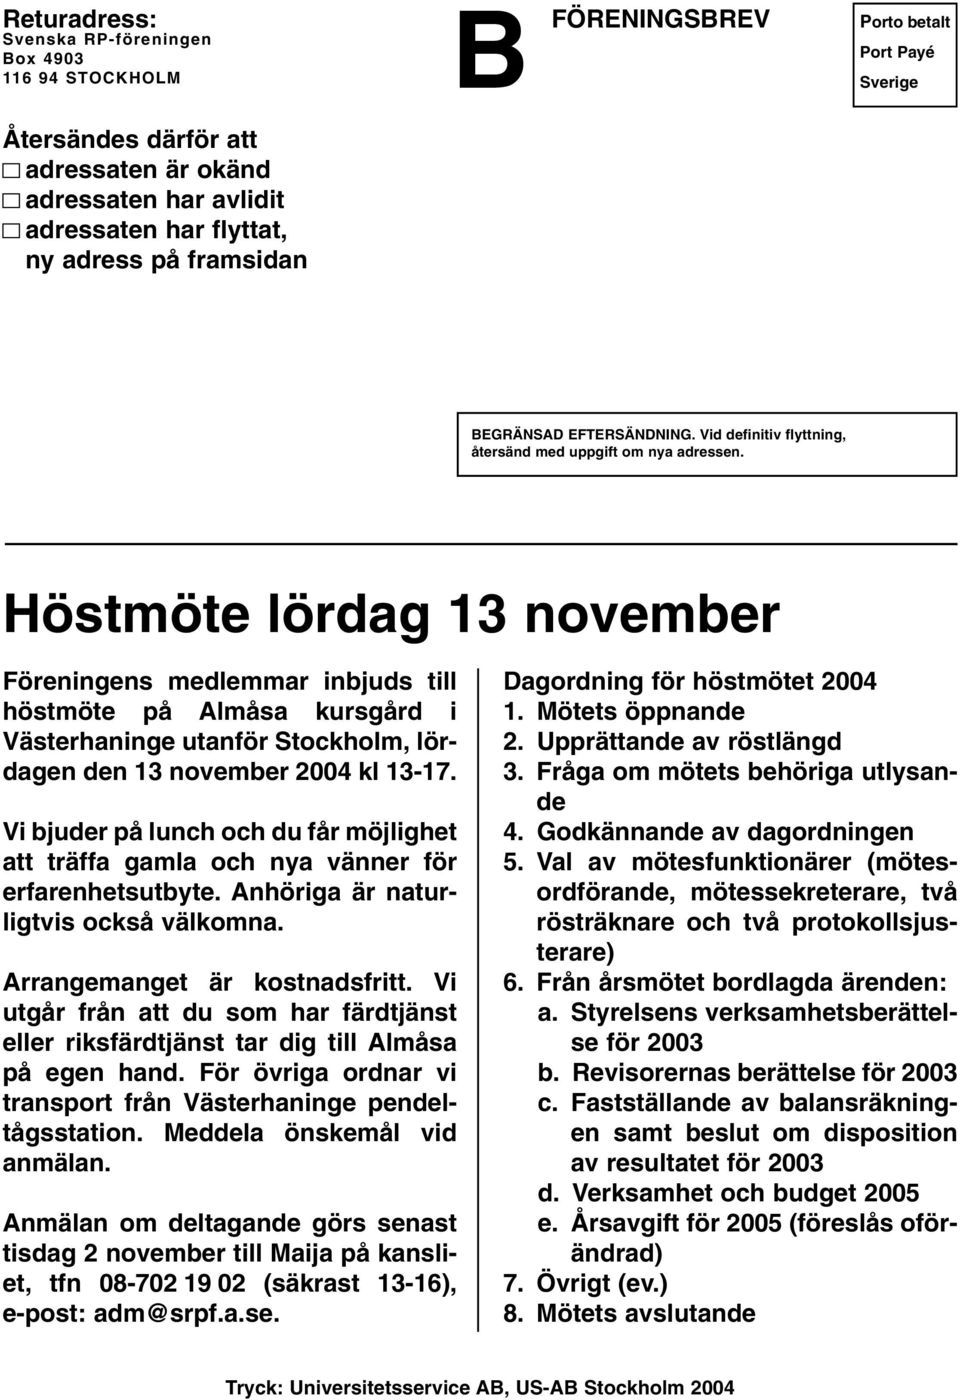 Höstmöte lördag 13 november Föreningens medlemmar inbjuds till höstmöte på Almåsa kursgård i Västerhaninge utanför Stockholm, lördagen den 13 november 2004 kl 13-17.